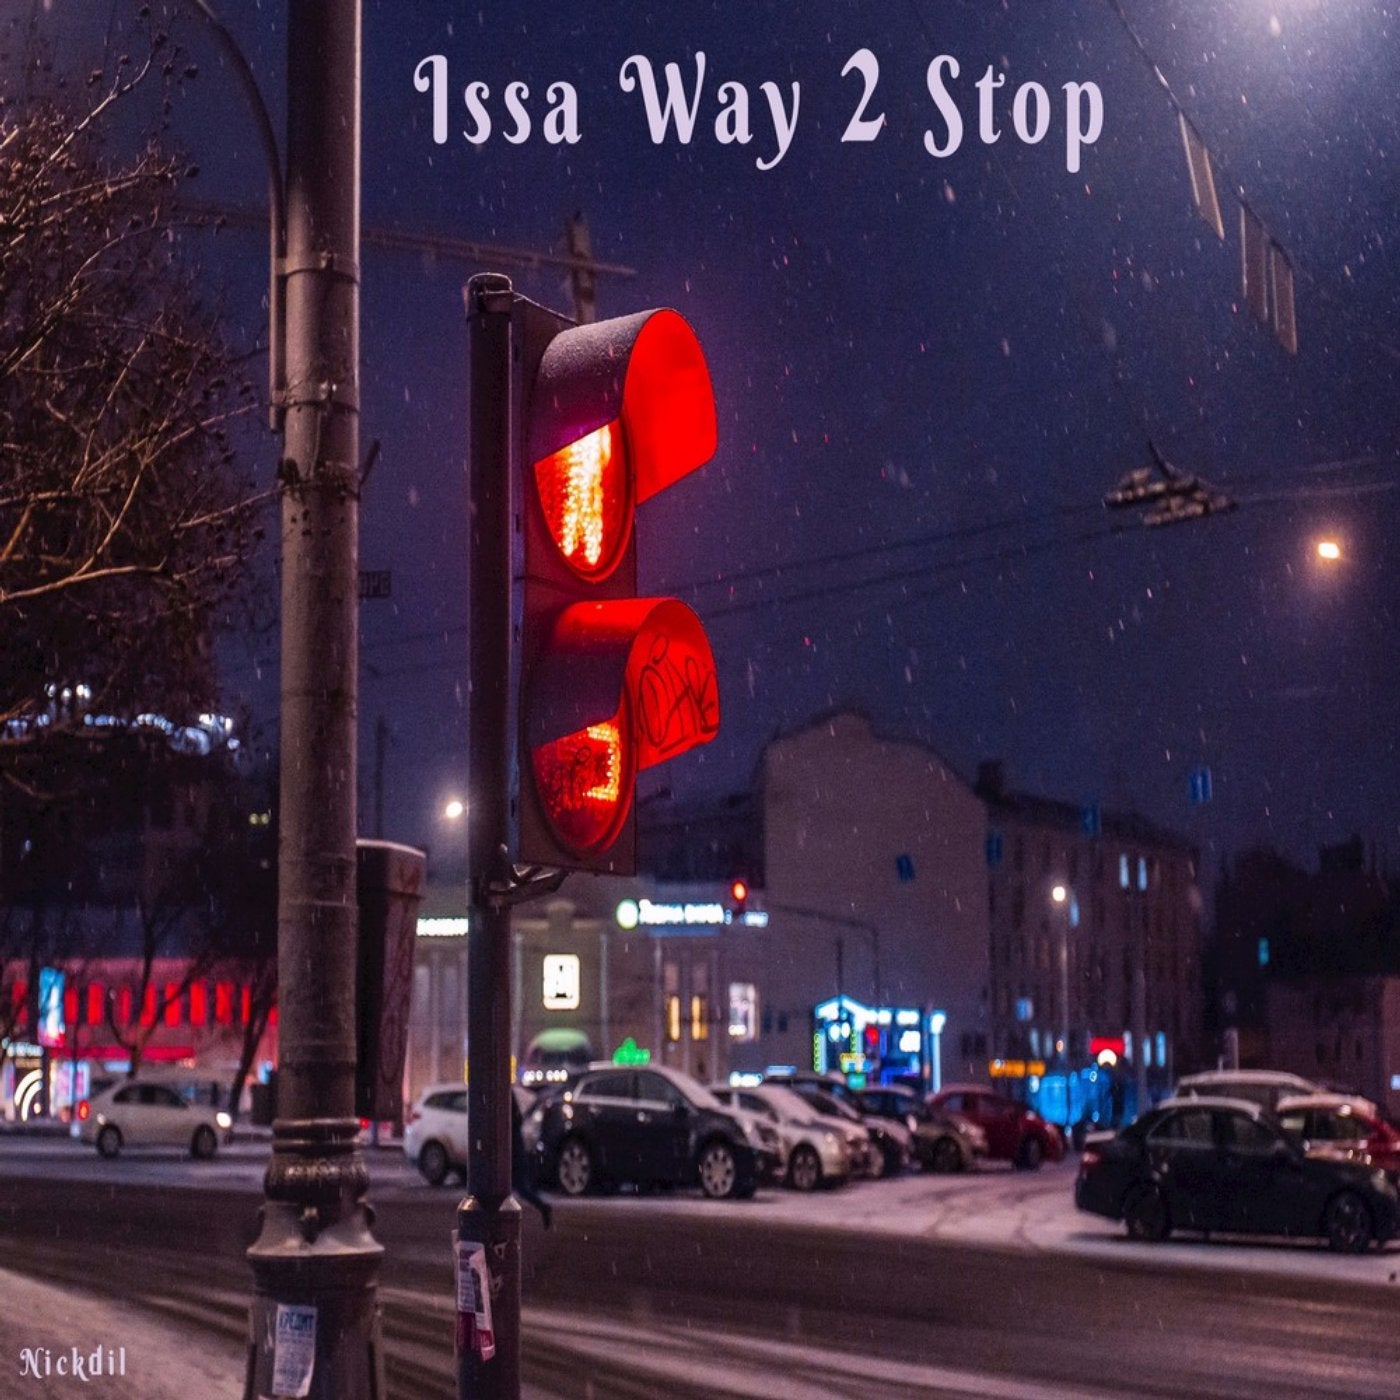 Issa Way 2 Stop